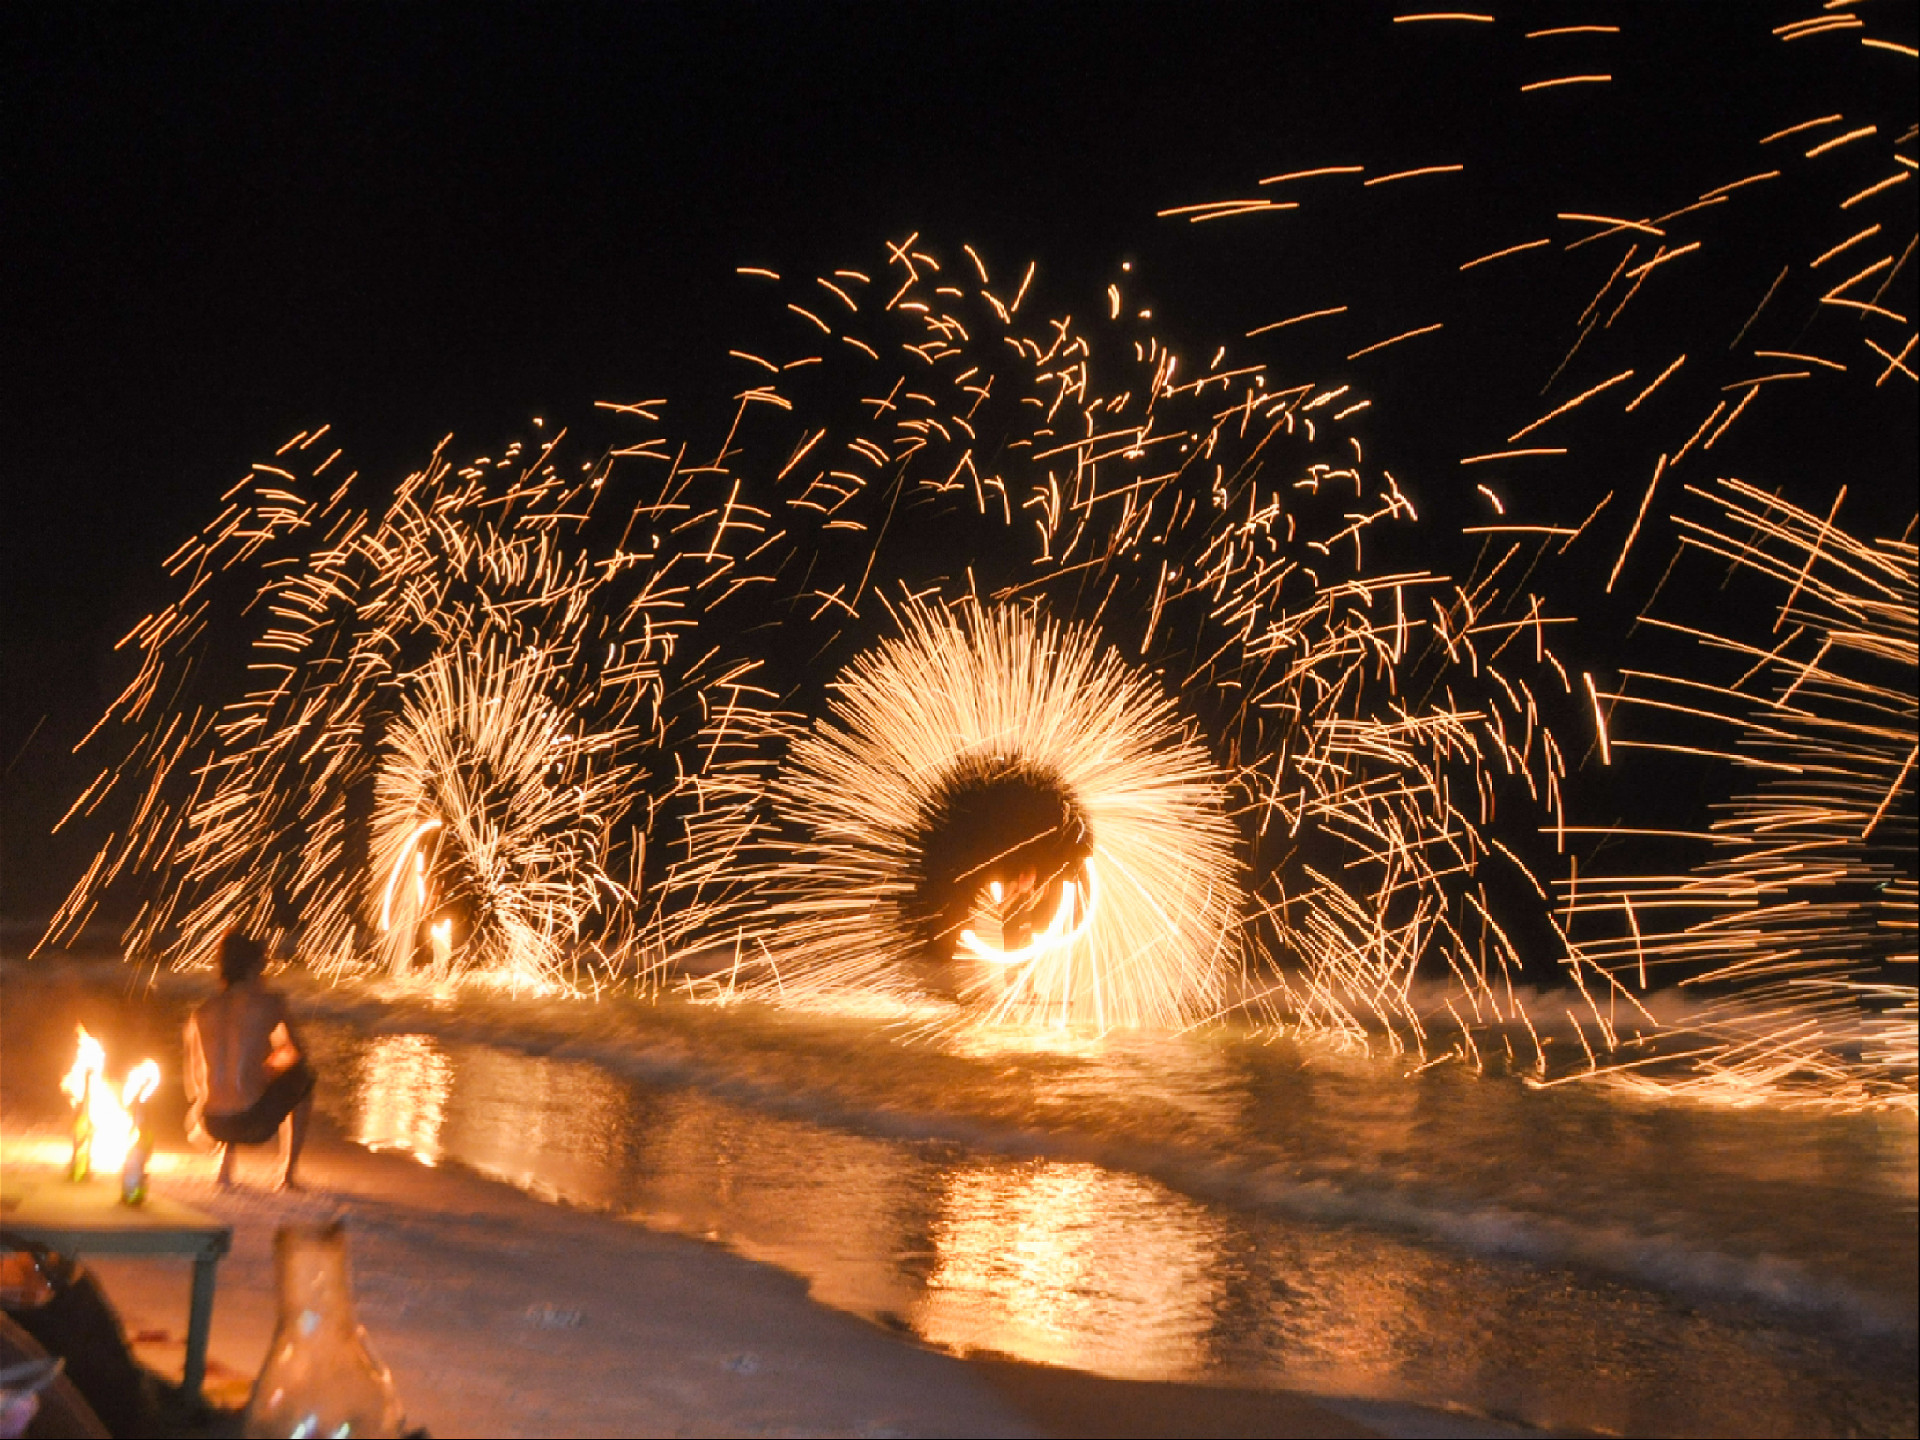 вращение огненных колес над водой на пляже